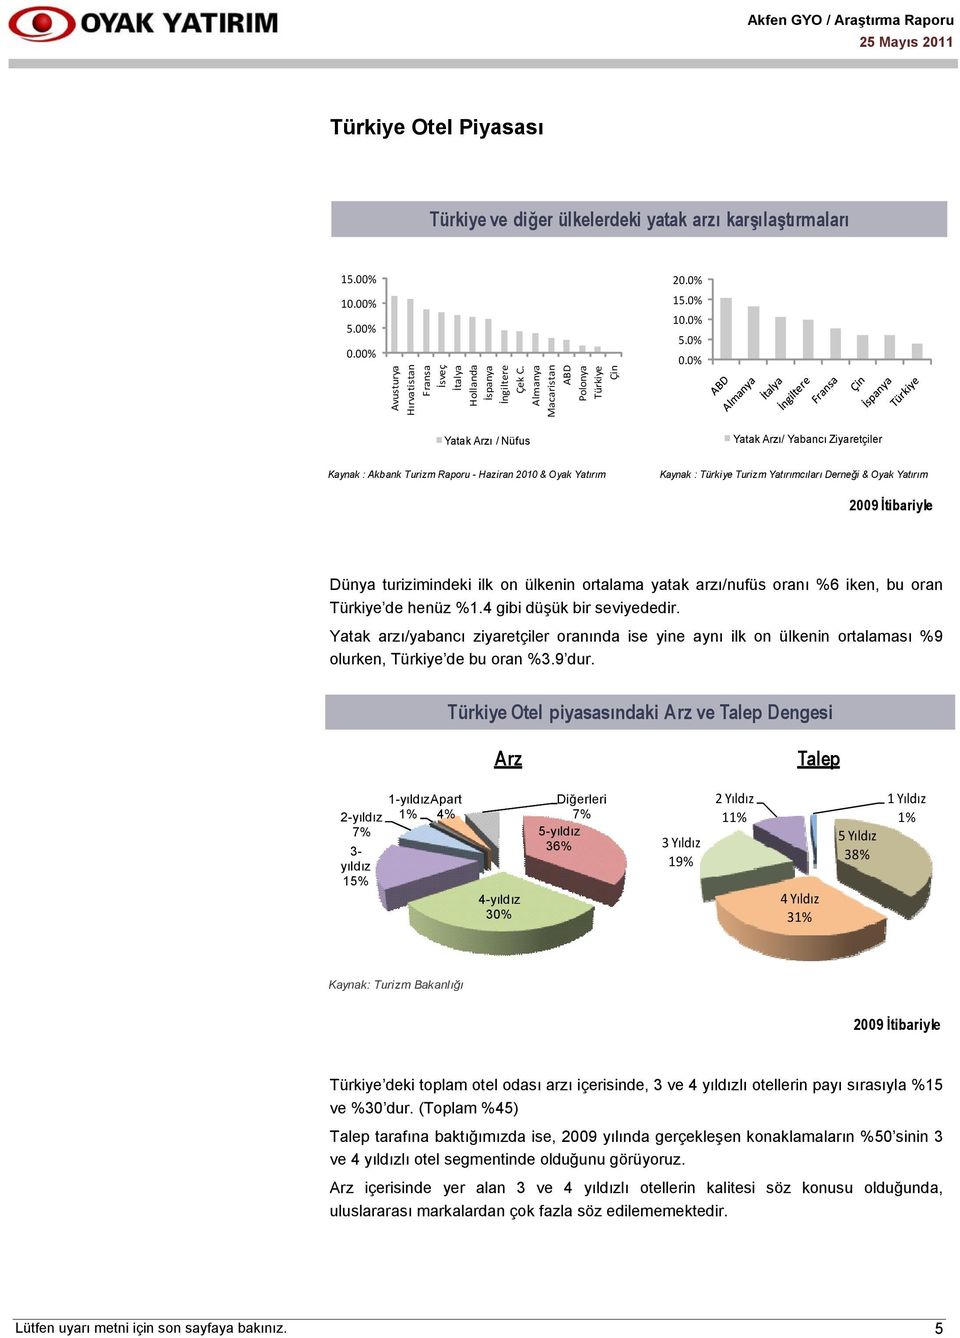 0% Yatak Arzı / Nüfus Yatak Arzı/ Yabancı Ziyaretçiler Kaynak : Akbank Turizm Raporu - Haziran 2010 & Oyak Yatırım Kaynak : Türkiye Turizm Yatırımcıları Derneği & Oyak Yatırım 2009 İtibariyle Dünya